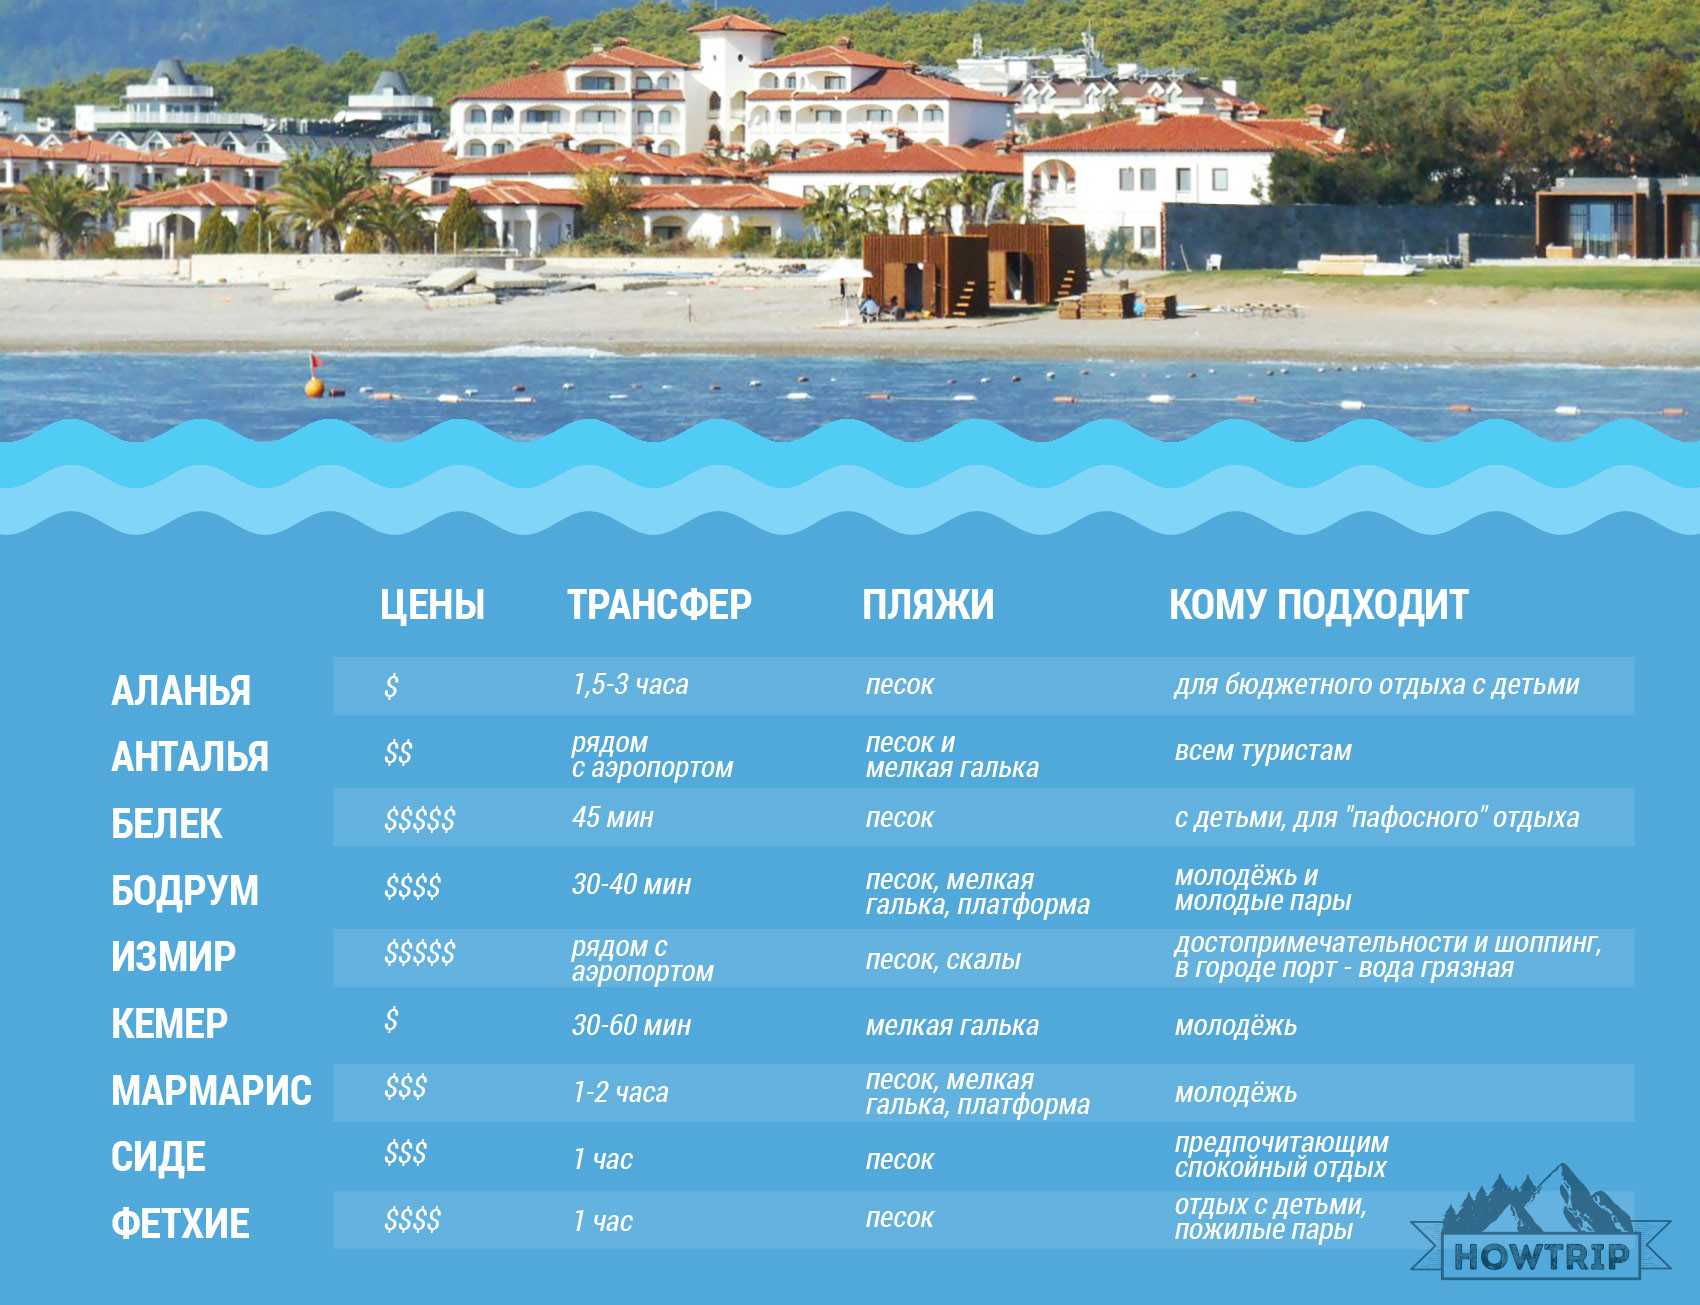 Погода в Турции в мае Температура воздуха и воды на самых популярных курортах Стоит ли ехать и куда Цены на путевку, отели, авиабилеты Чем заняться